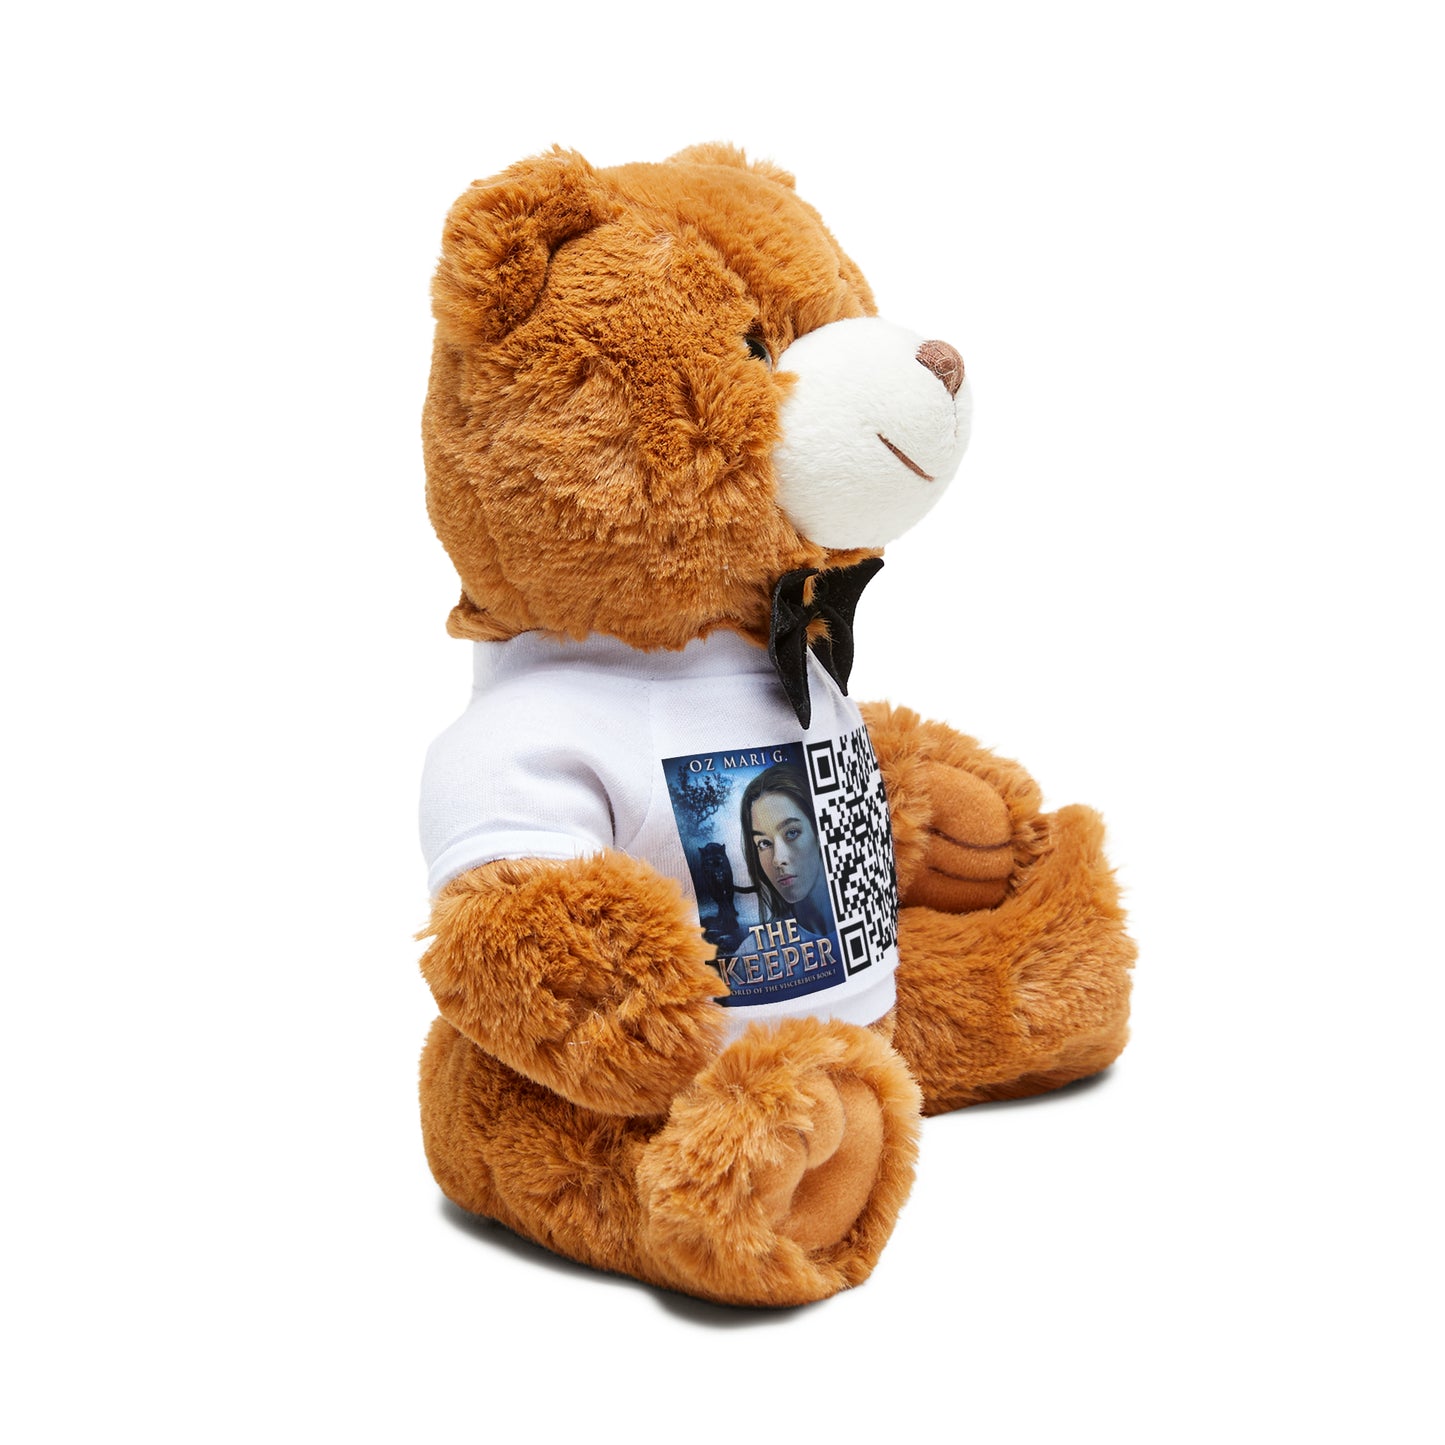 The Keeper - Teddy Bear